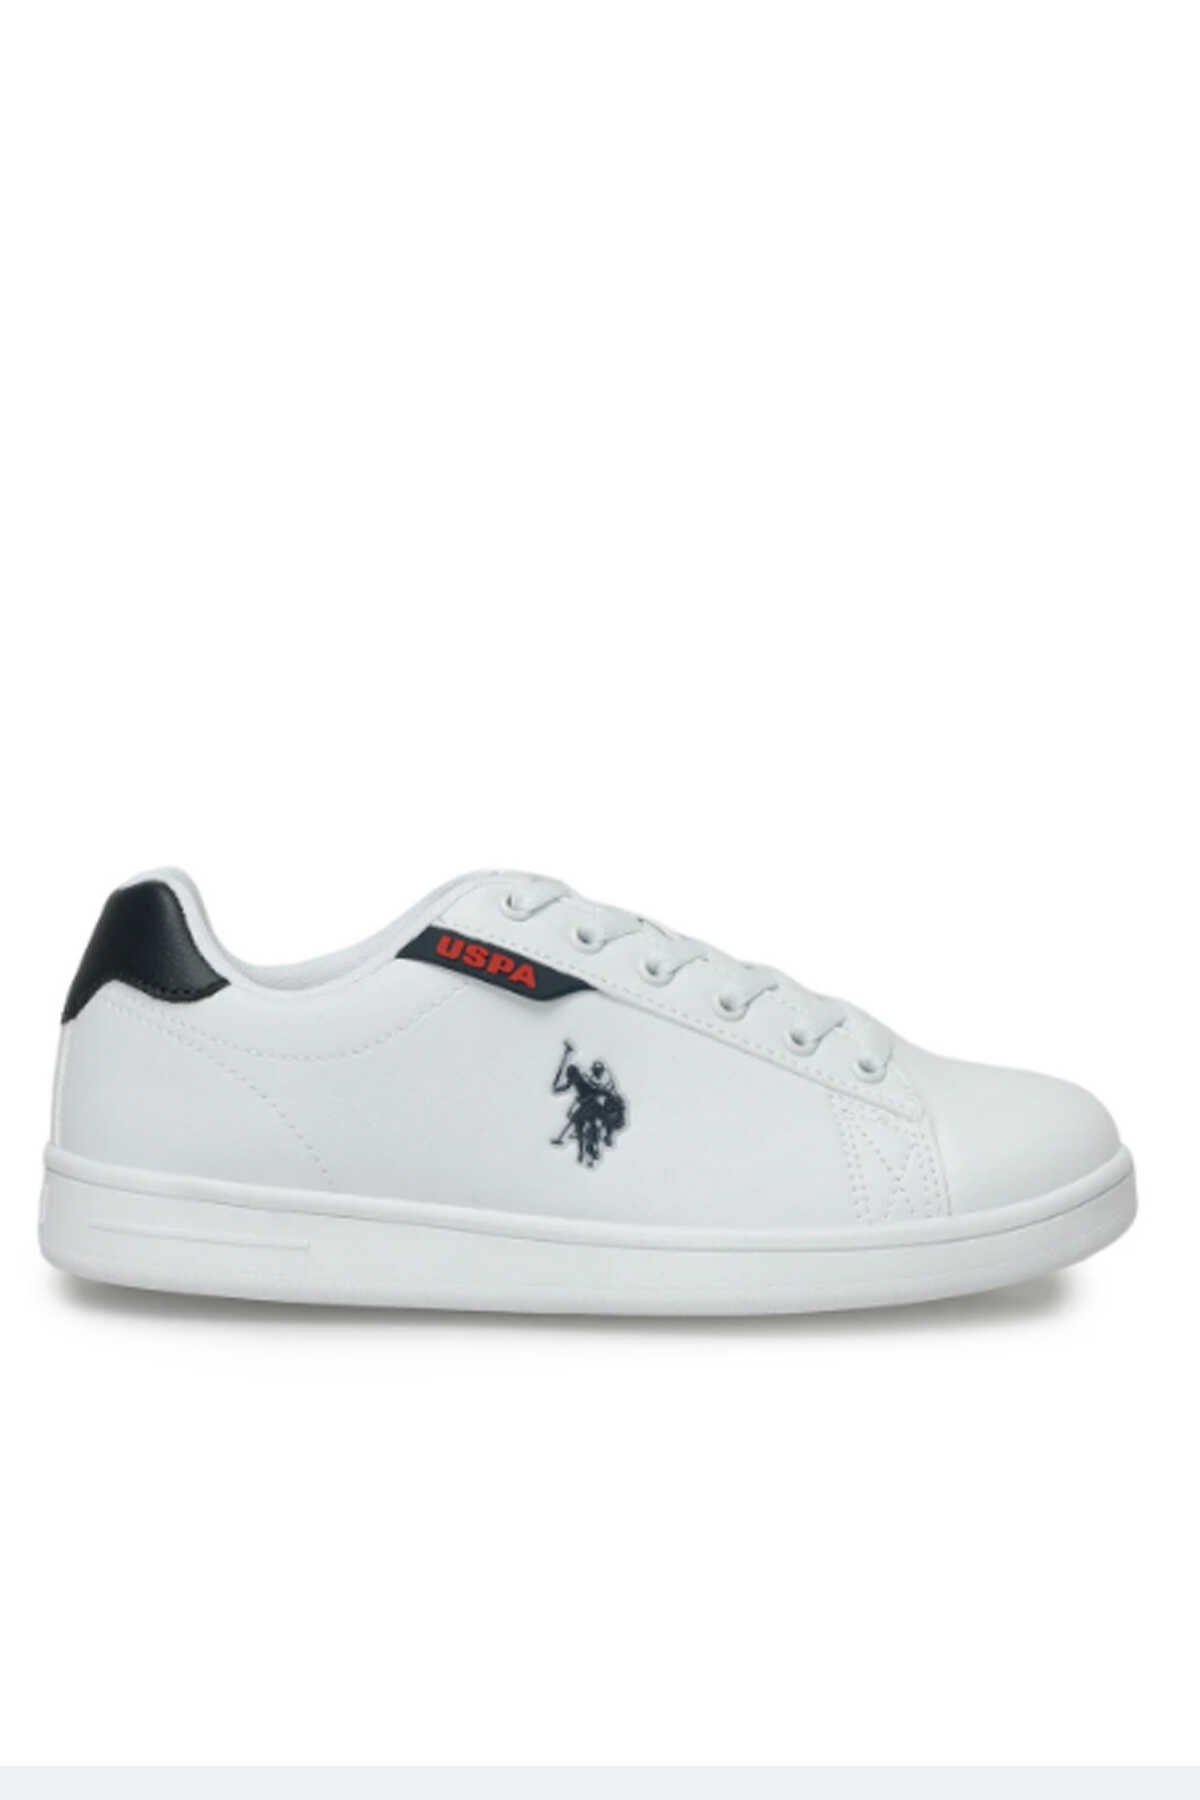 U.S. Polo Assn. - U.S. Polo Assn. 4M COSTA WMN 4FX Kadın Sneaker Ayakkabı Beyaz